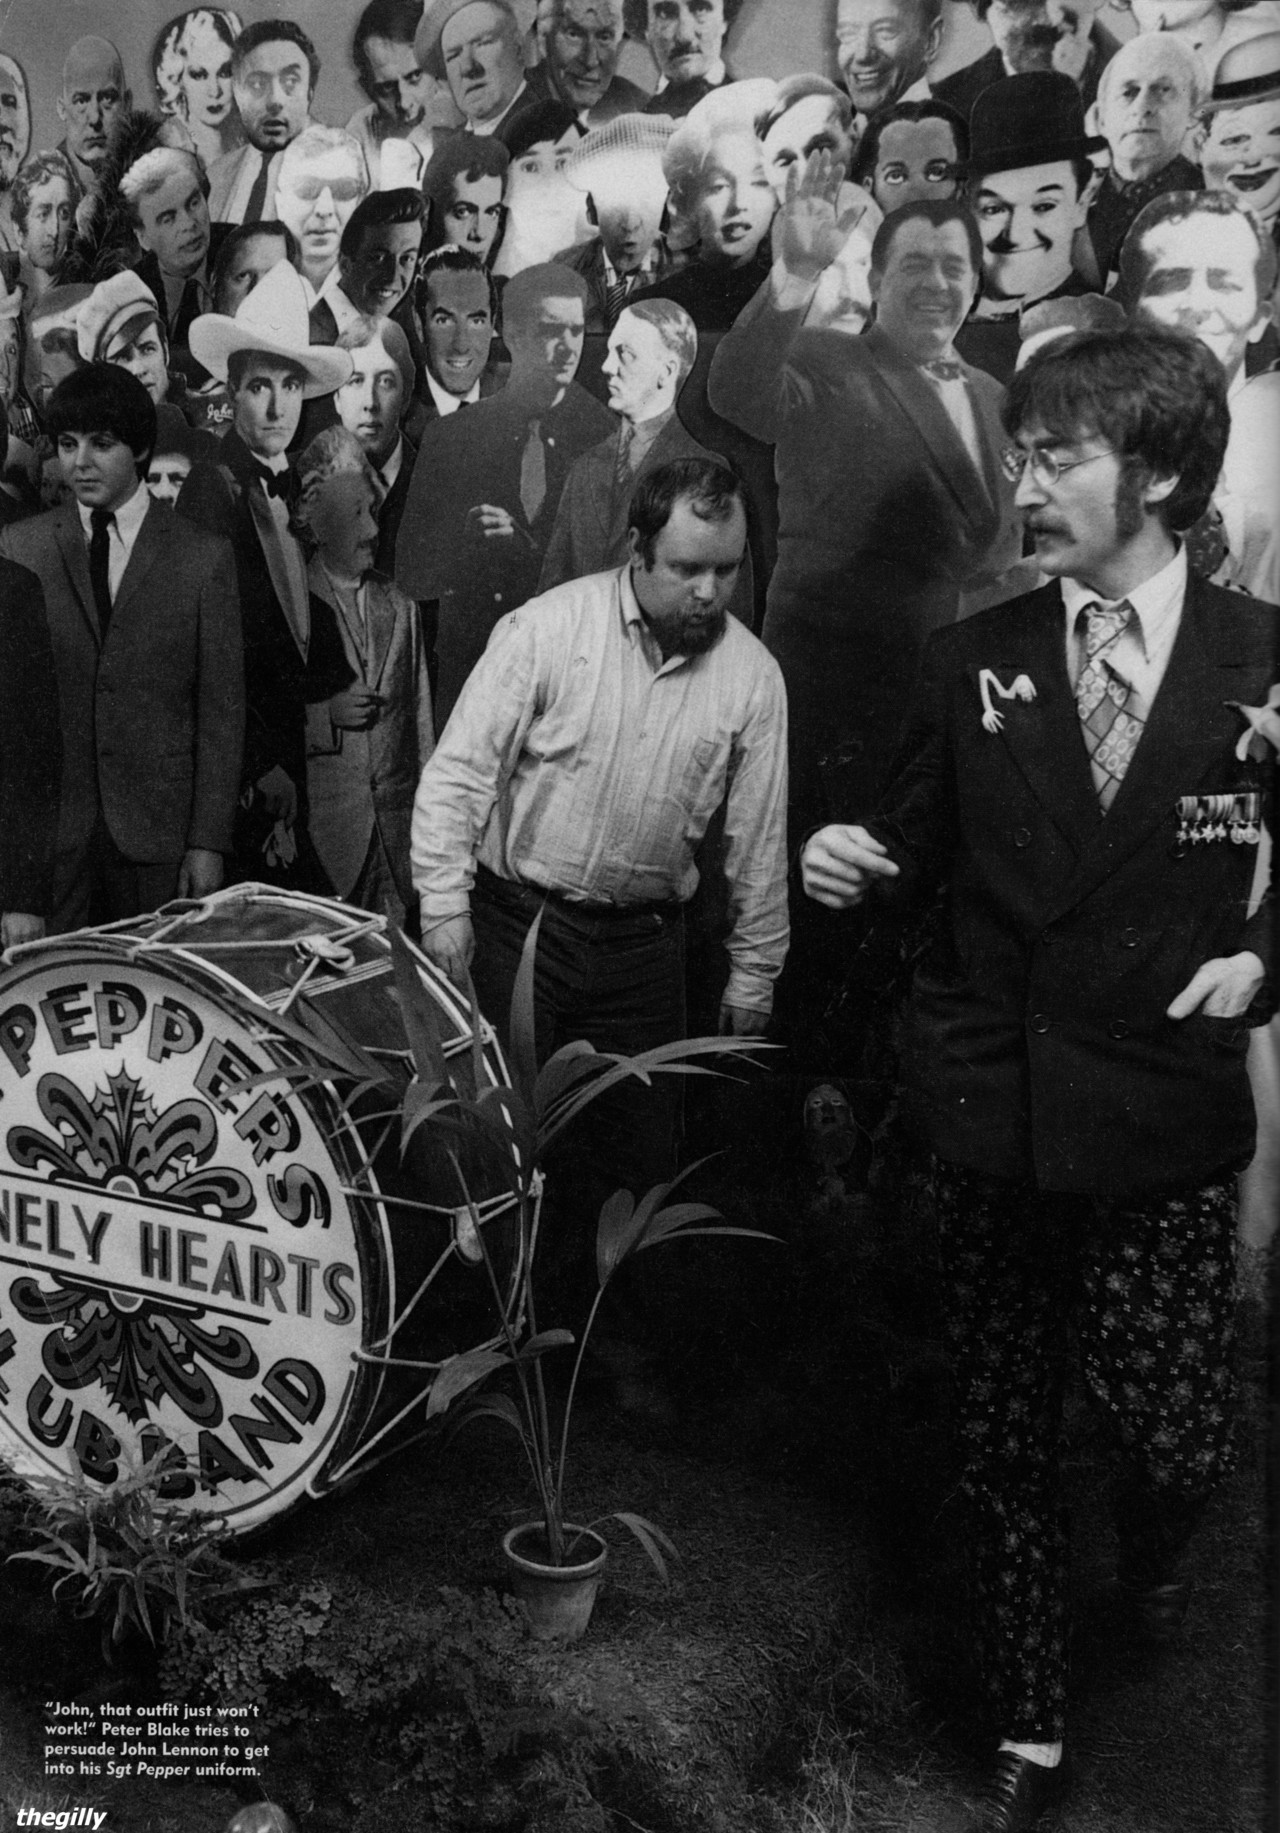 Beatles sgt pepper lonely. The Beatles Sgt. Pepper's Lonely Hearts Club Band 1967. The Beatles Sgt Pepper оркестр 1967. John Lennon Sgt Pepper's Lonely Hearts Band. The Beatles сержант Пеппер.